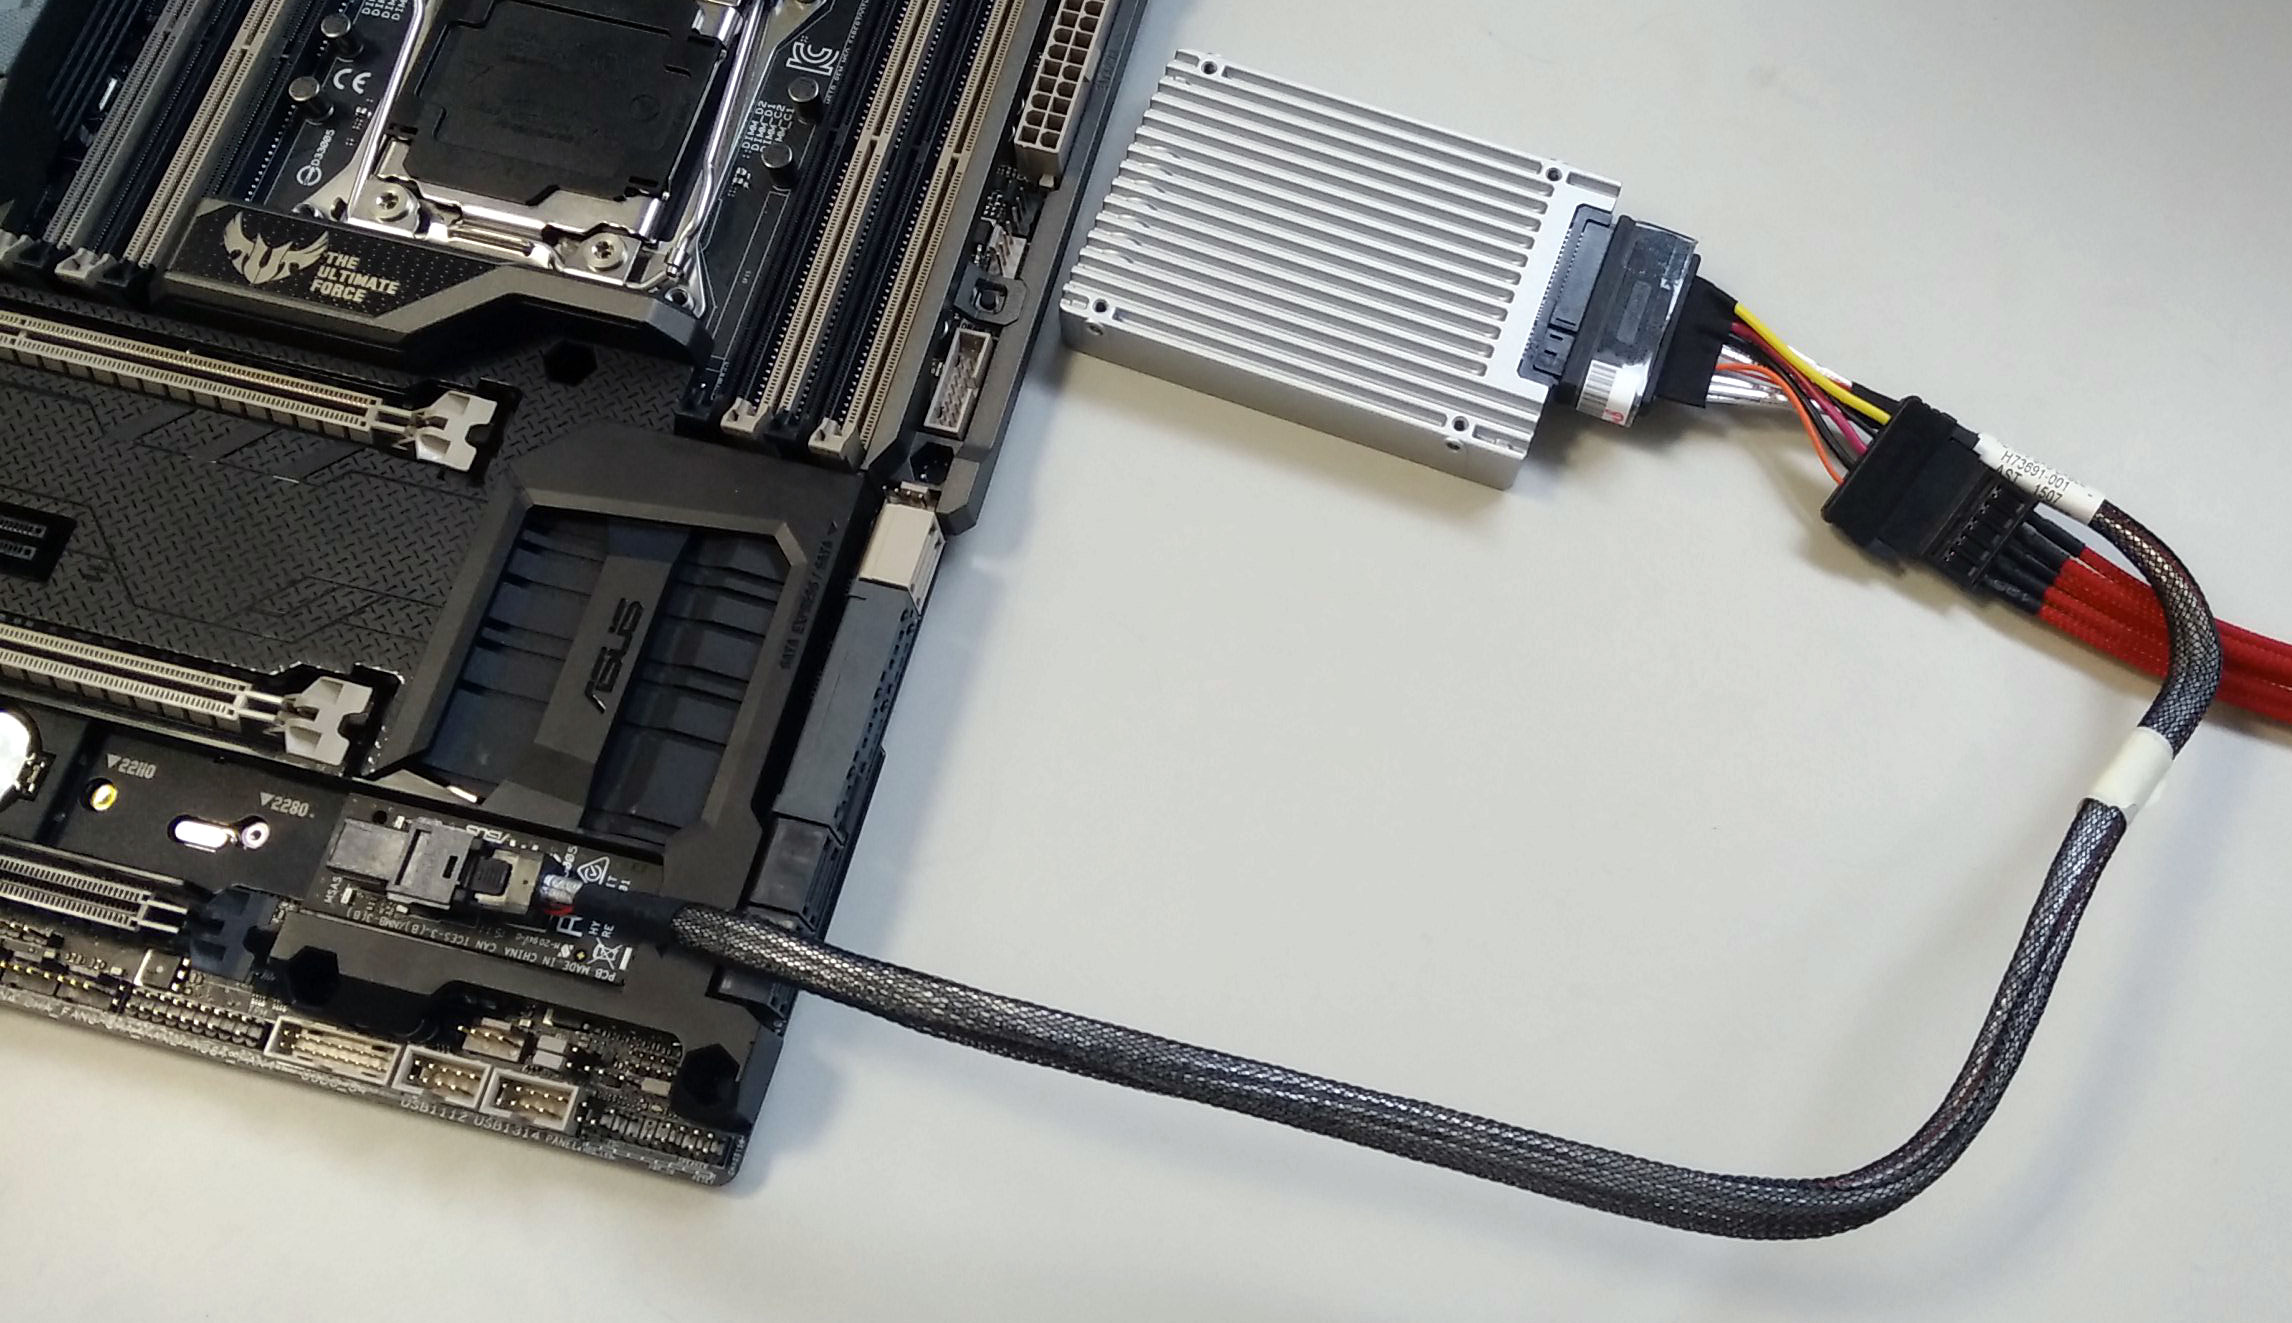 Immagine pubblicata in relazione al seguente contenuto: ASUS lancia l'adapter Hyper Kit per i nuovi SSD 750 NVMe di Intel | Nome immagine: news22423_ASUS-Hyper-Kit_4.jpg